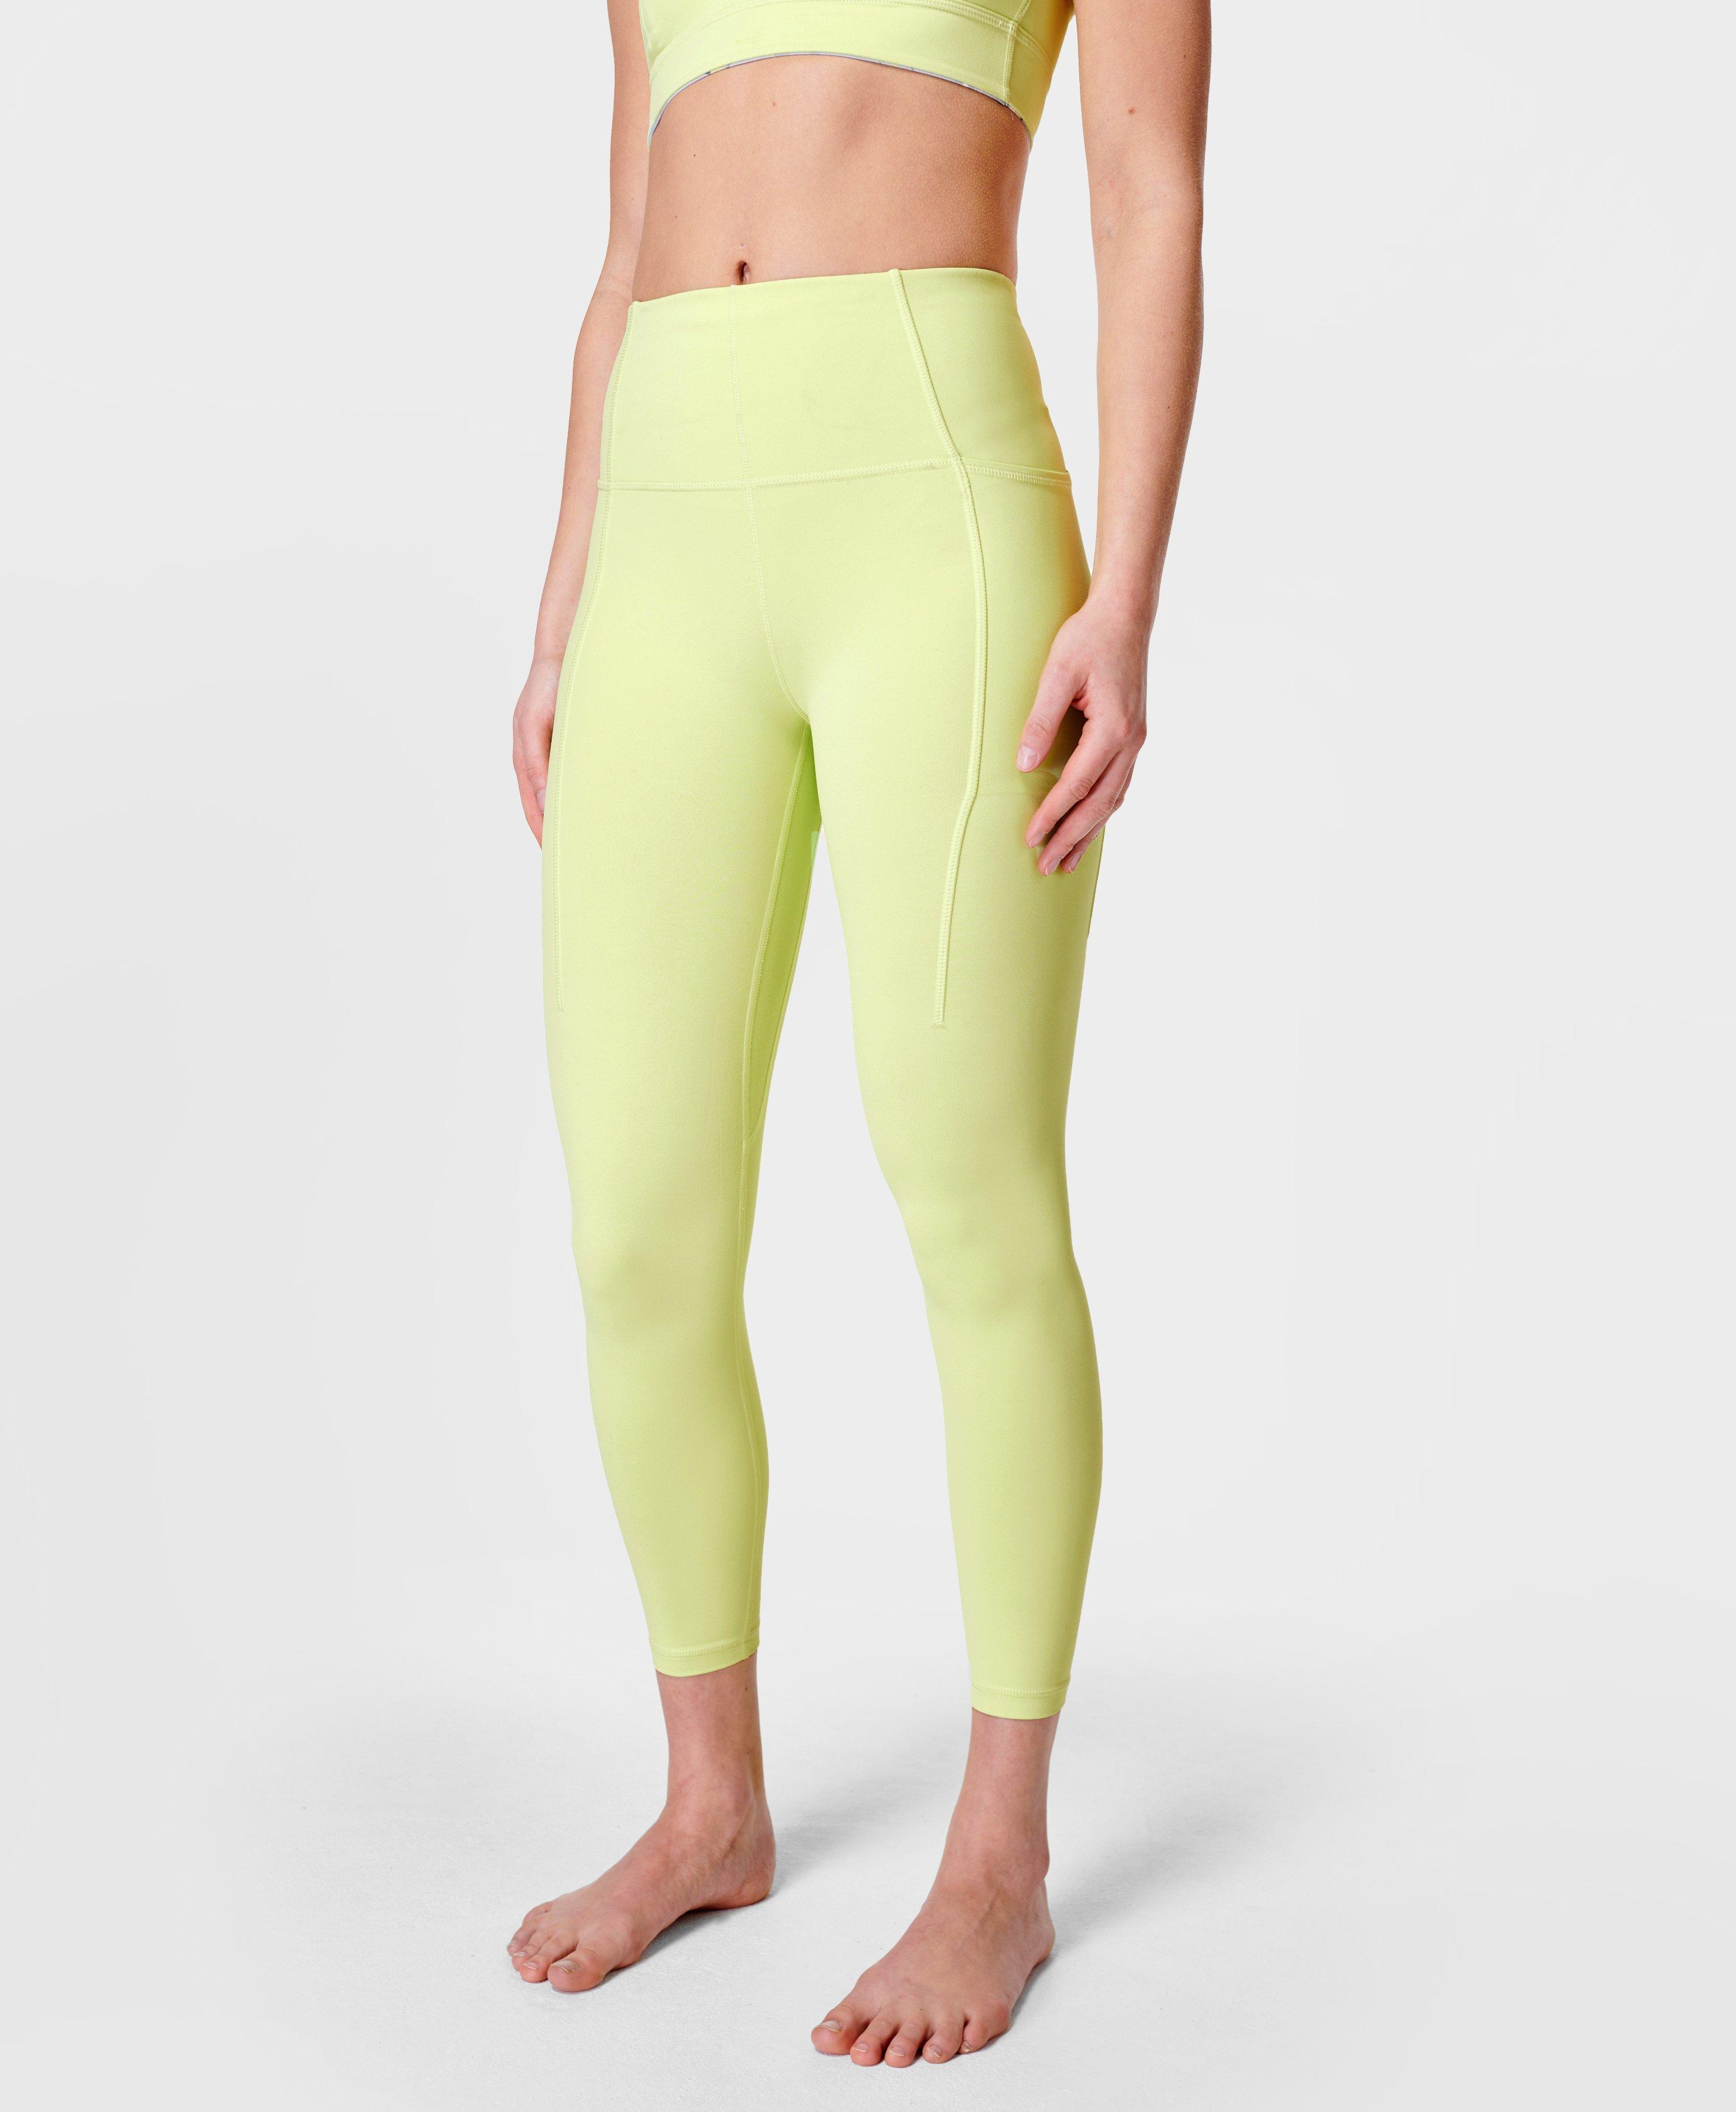 Super Soft 7/8 Yoga Leggings - Pomelo Green, Women's Leggings